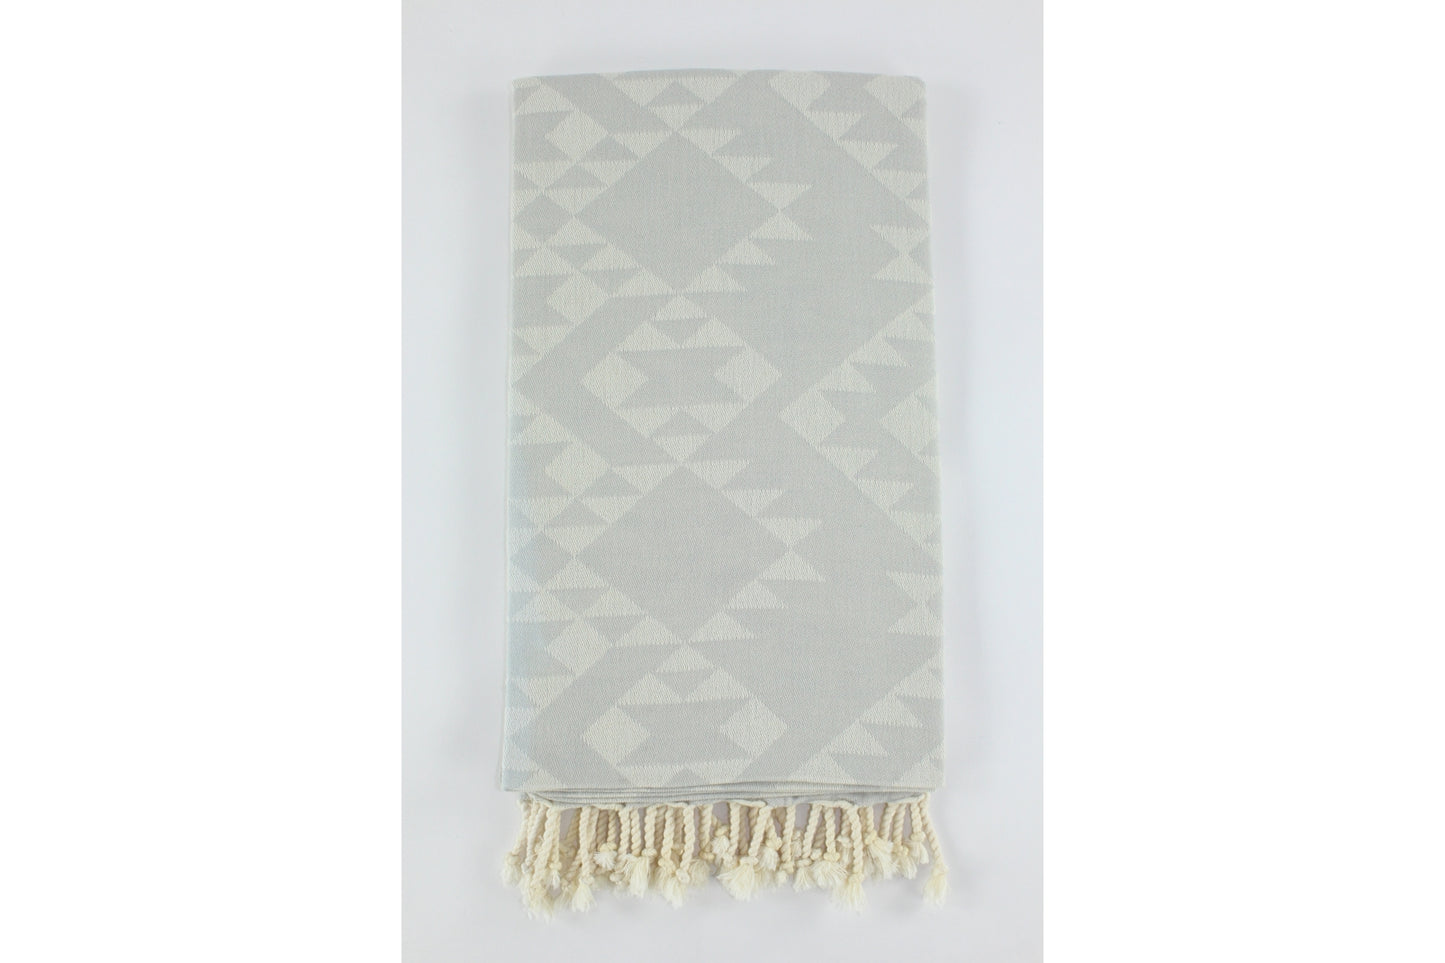 Premium Turkish Kilim Towel Peshtemal Fouta (Light Gray)